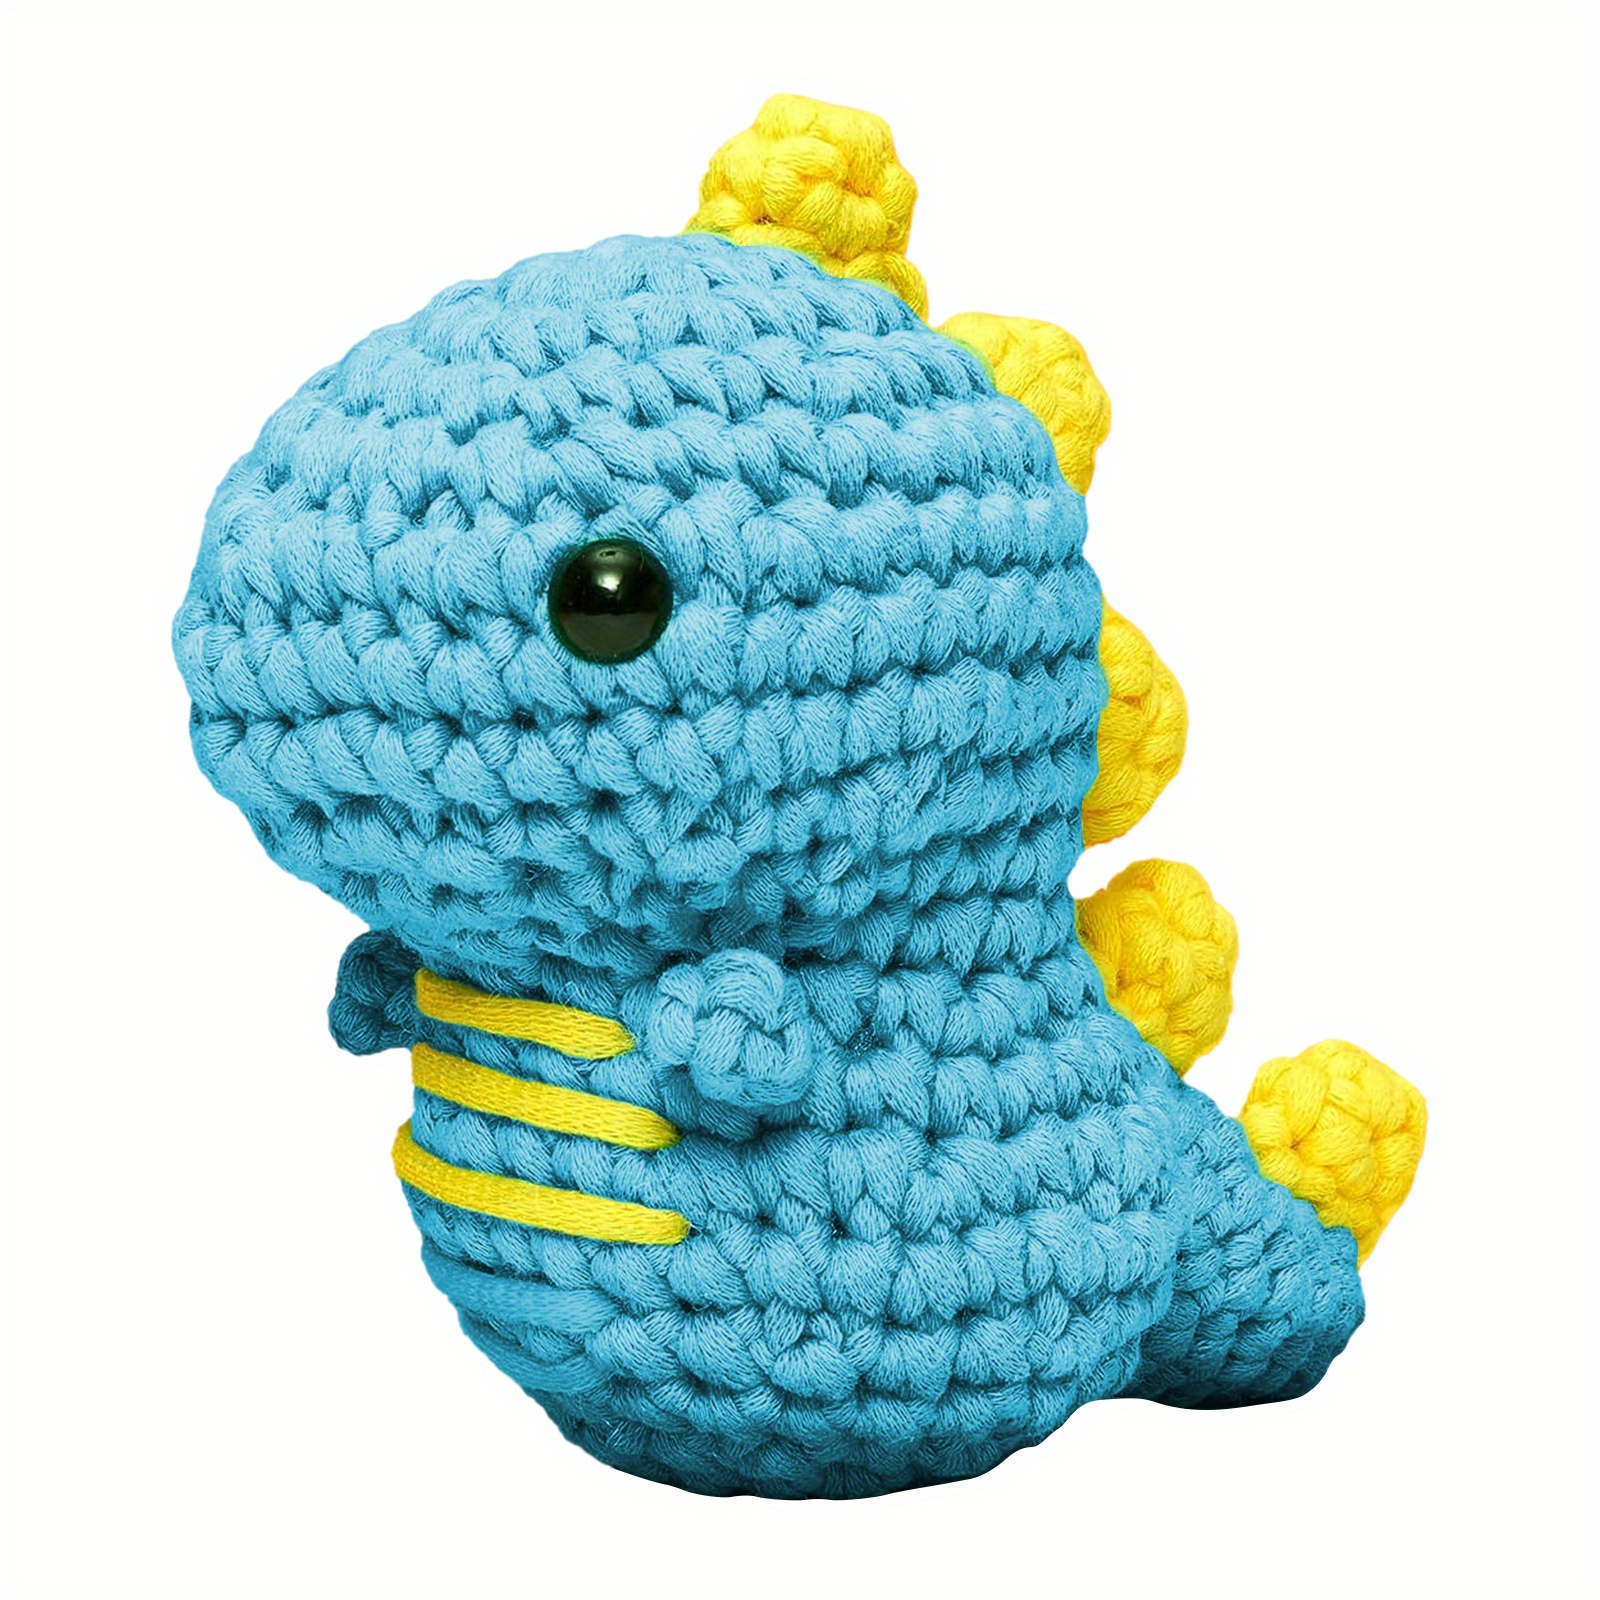 Blue Dinosaur Crochet Kit For Beginners, Beginner Crochet Starter Kit With  Step-by-step Video Tutorials, Learn To Crochet Kits For Adults, Diy  Knitting Supplies - Crochet Dinosaur Pattern Manual And Beginner's Basic  Crochet